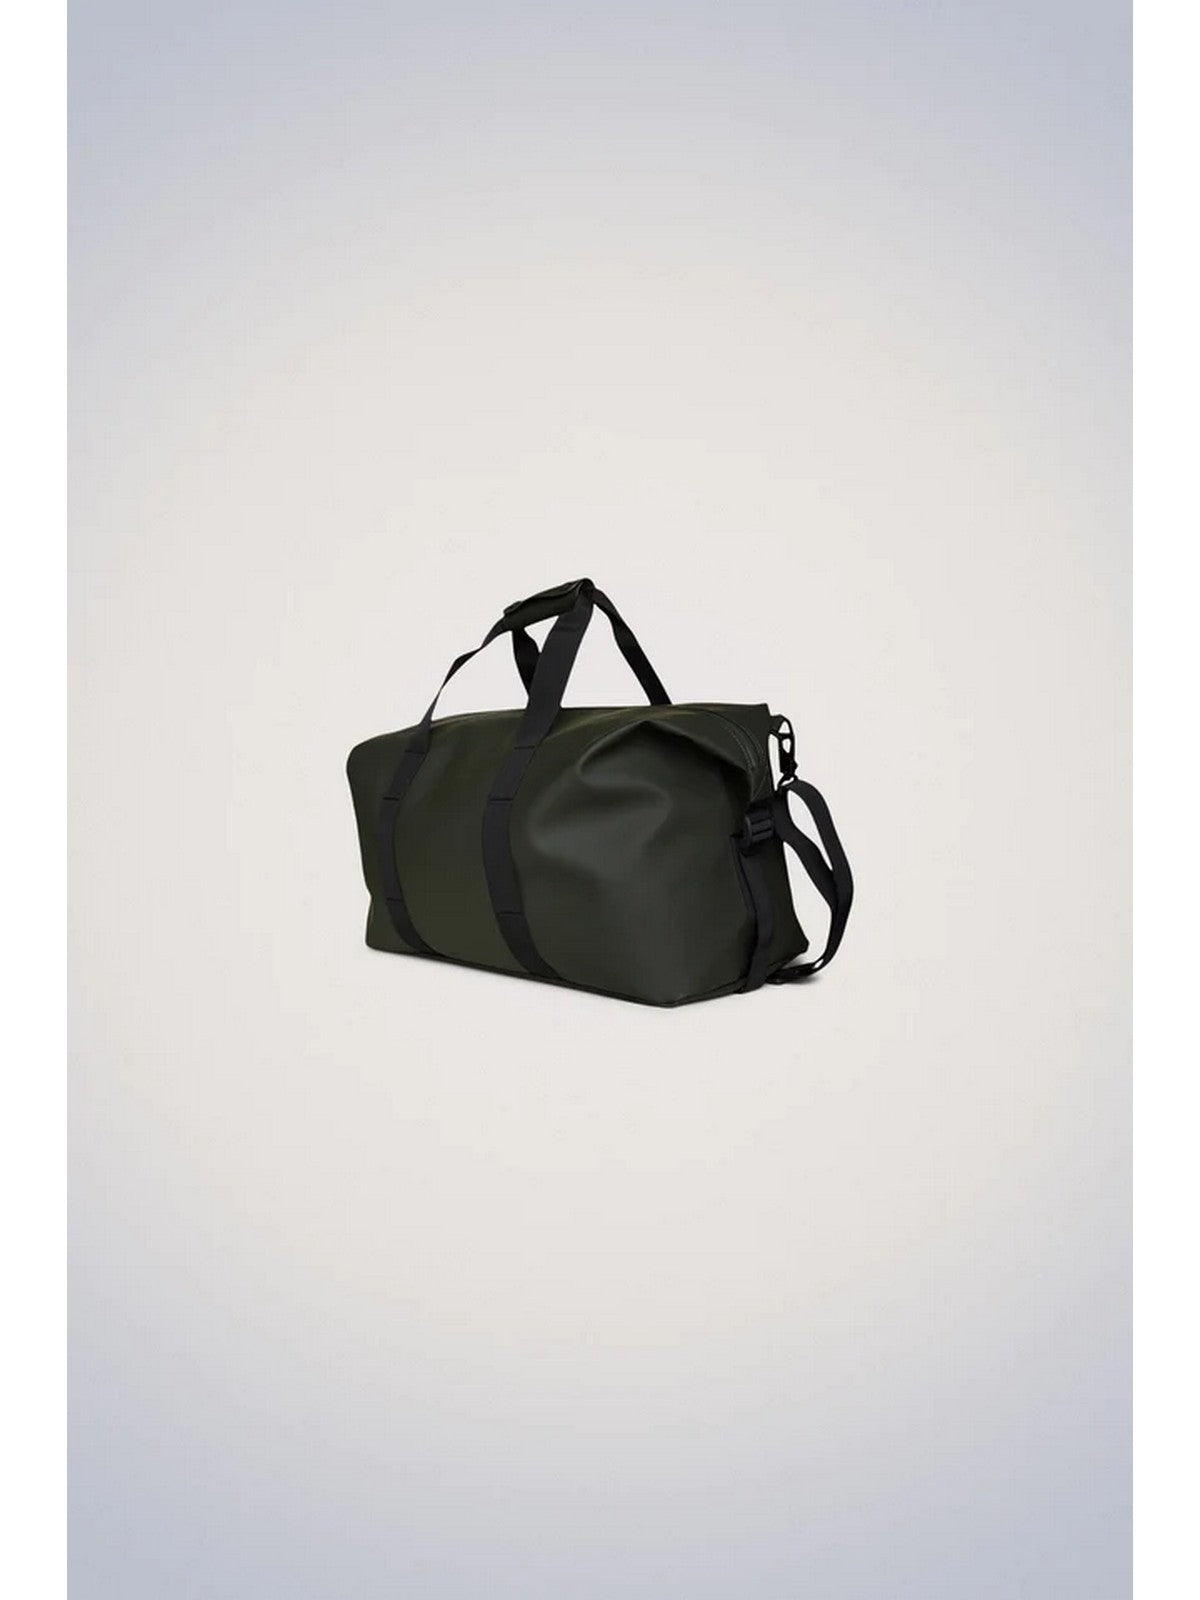 RAINS Bagages et Trolley Cases Unisex Adulte Hilo Weekend Bag W3 14200 03 Vert